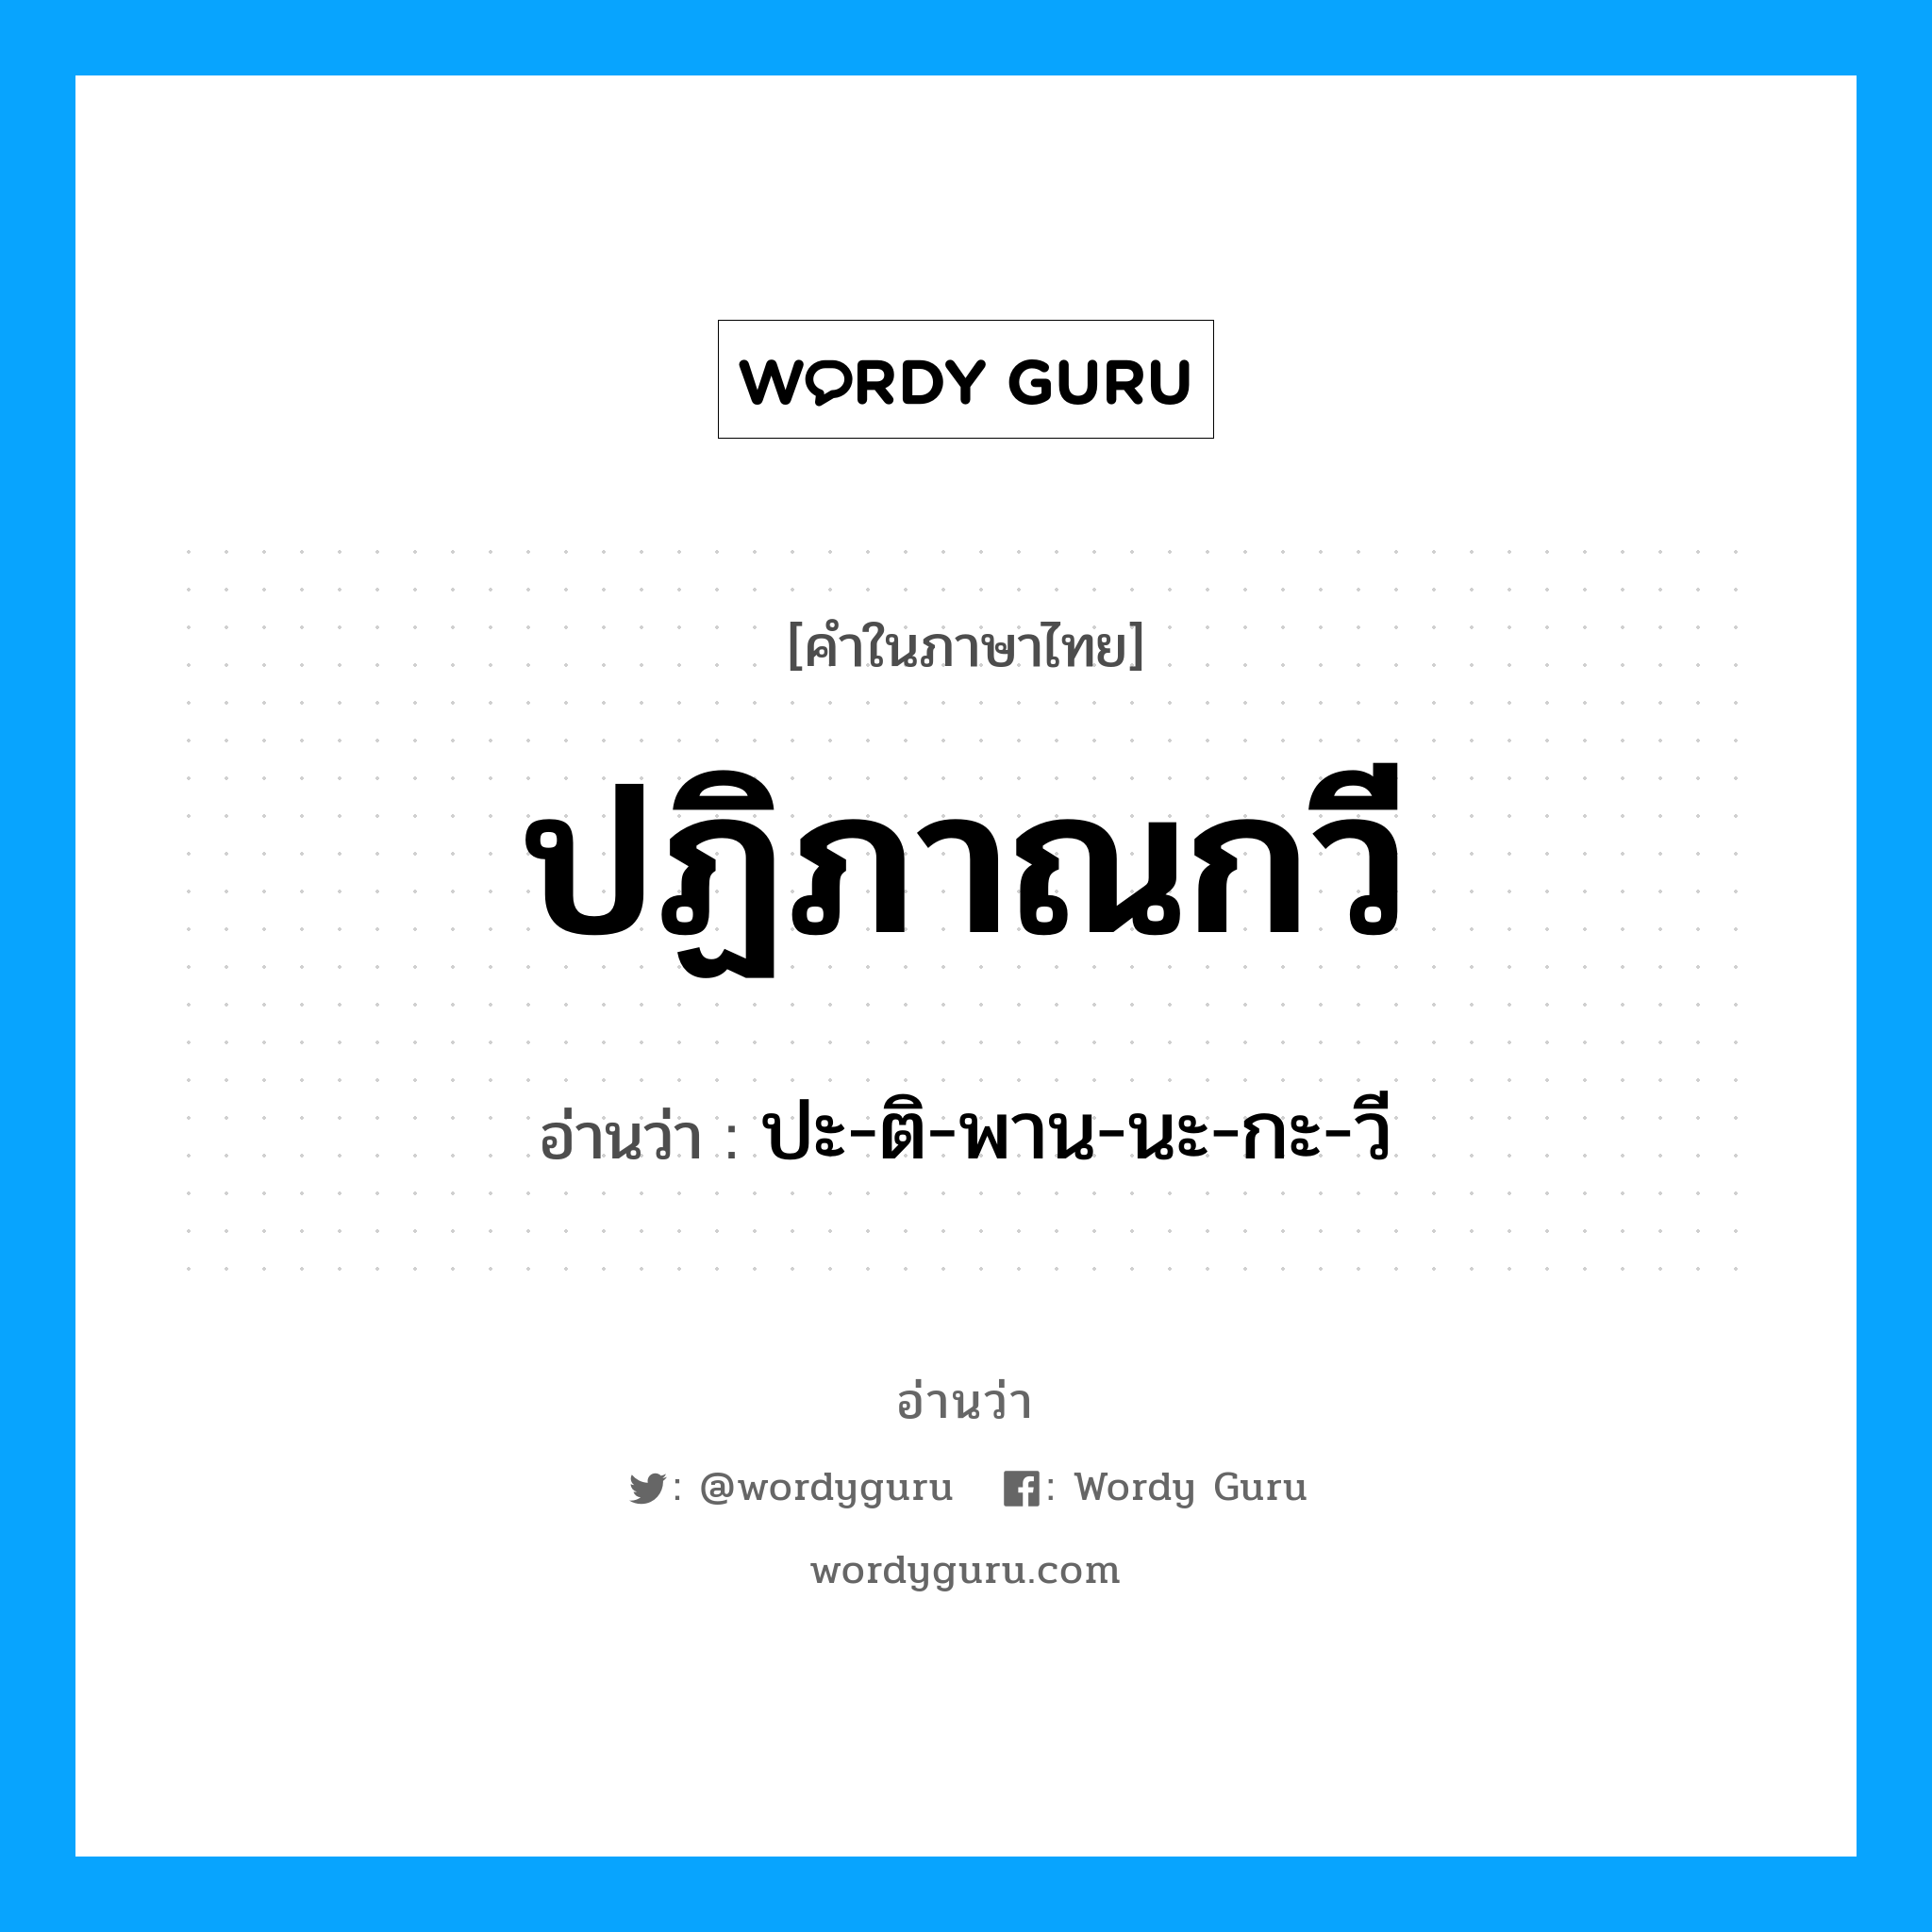 ปะ-ติ-พาน-นะ-กะ-วี เป็นคำอ่านของคำไหน?, คำในภาษาไทย ปะ-ติ-พาน-นะ-กะ-วี อ่านว่า ปฏิภาณกวี